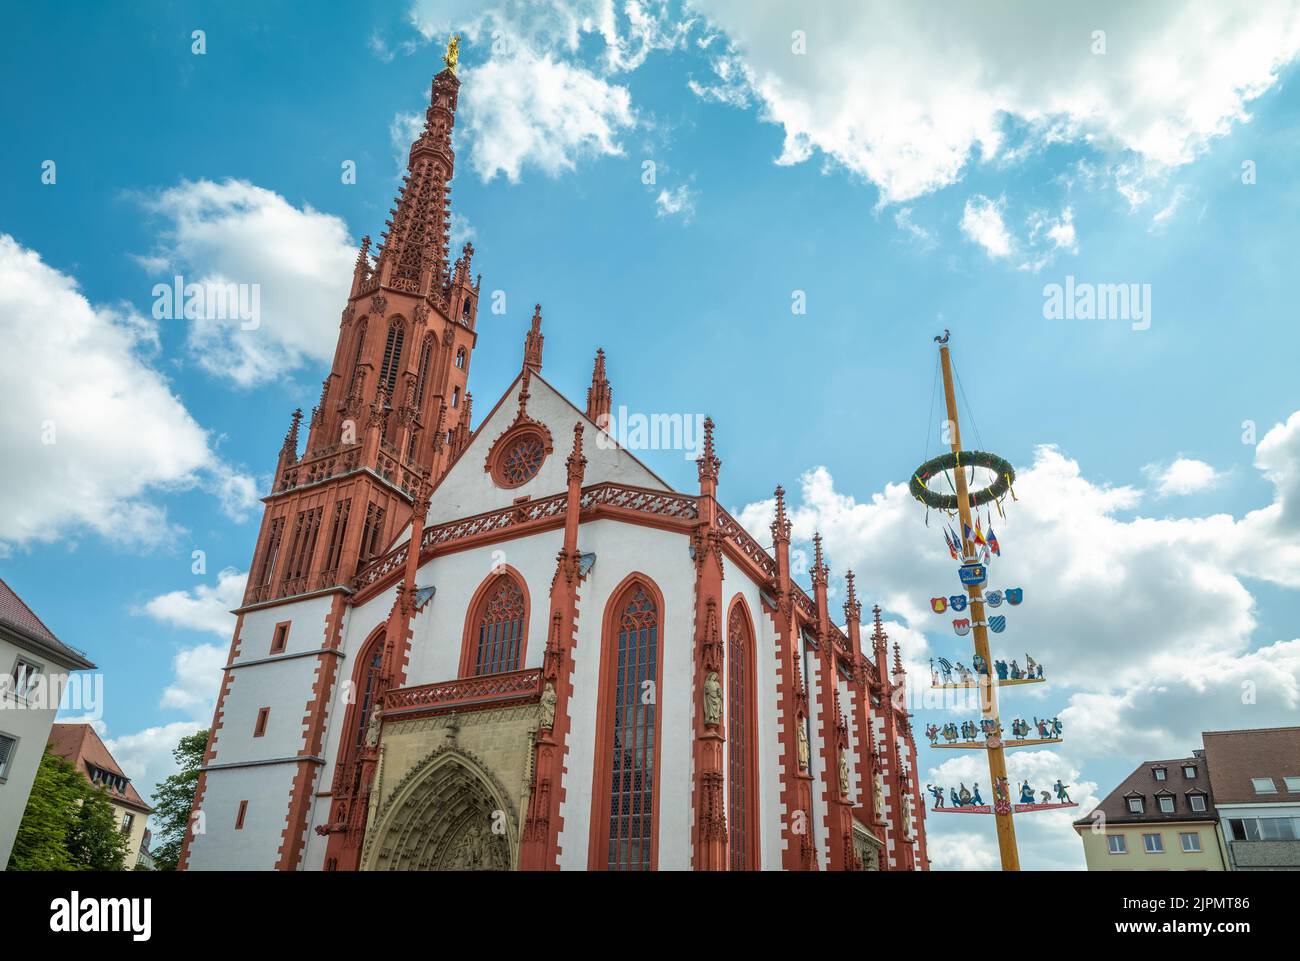 Germany, Wurzburg, upward view of the main facade of the Marienkapelle Gothic Church (St. Mary's church) Stock Photo